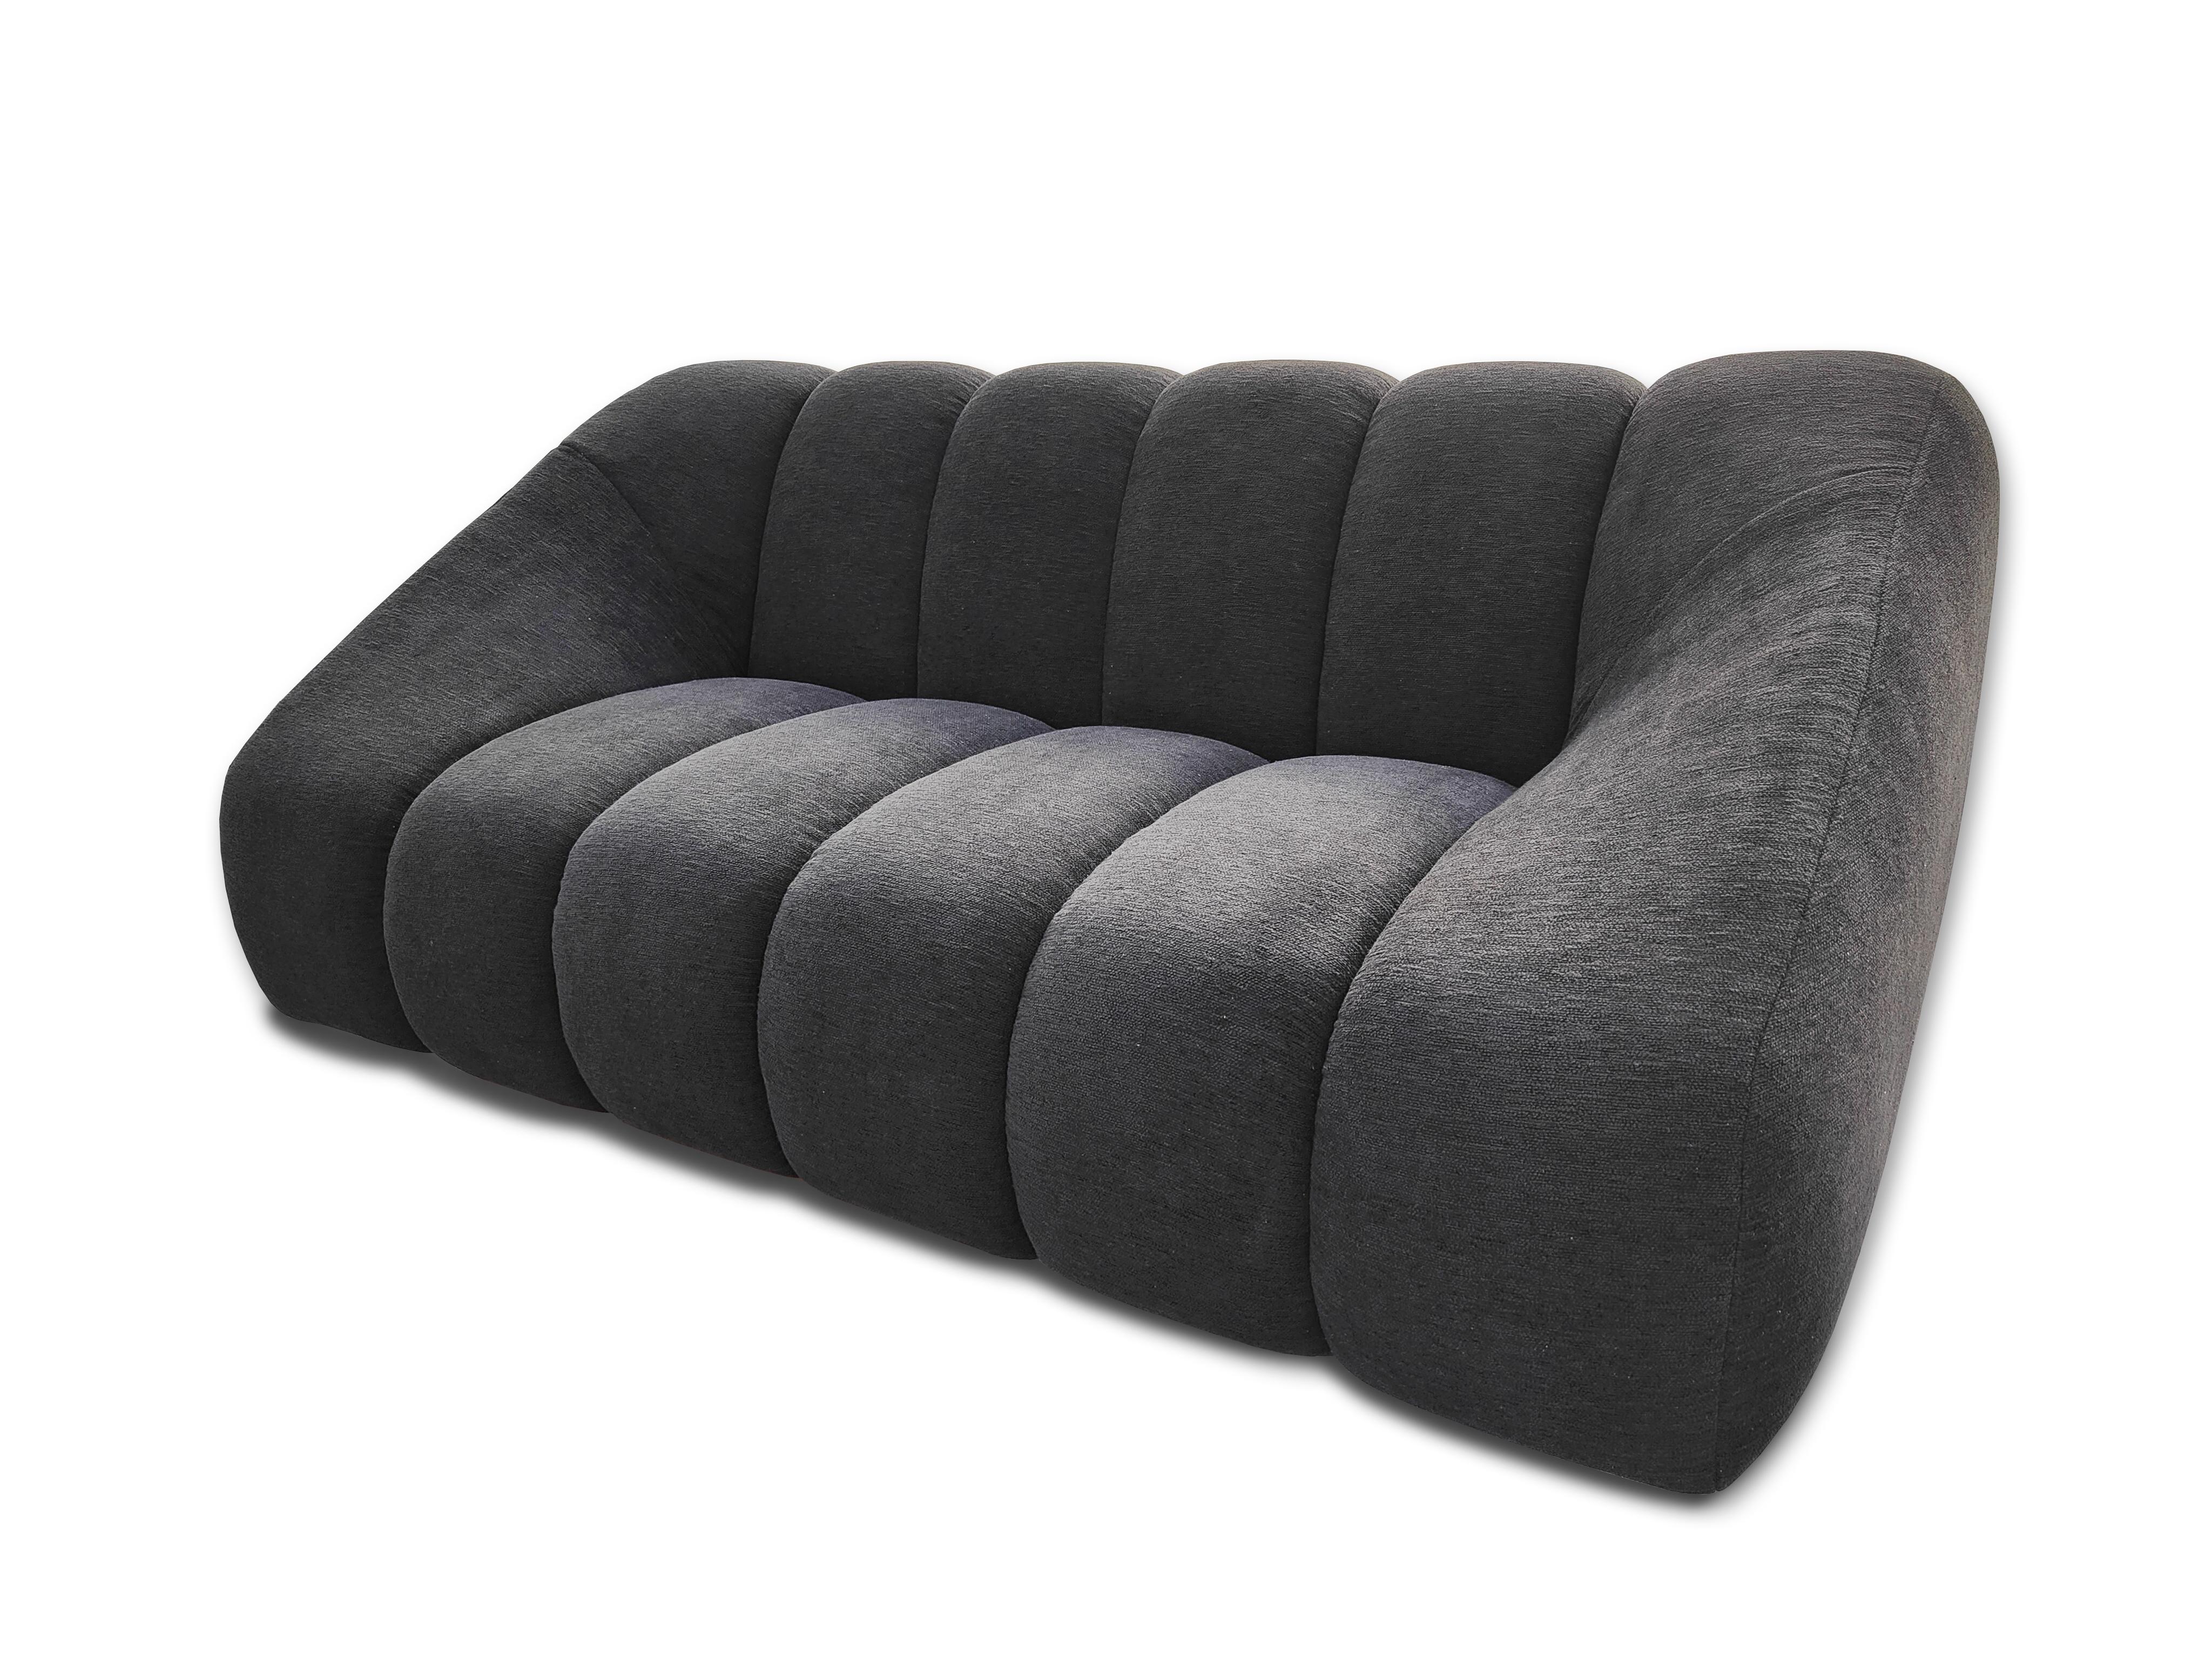 Das Sofa Di Nuovo nimmt die charakteristischen Linien des Designs der 1970er Jahre auf; es hat eine üppige und großzügige Form, mit einer breiten Sitzfläche und einer hohen Rückenlehne.
Der italienische Name steht für das, was dieses Sofa für den